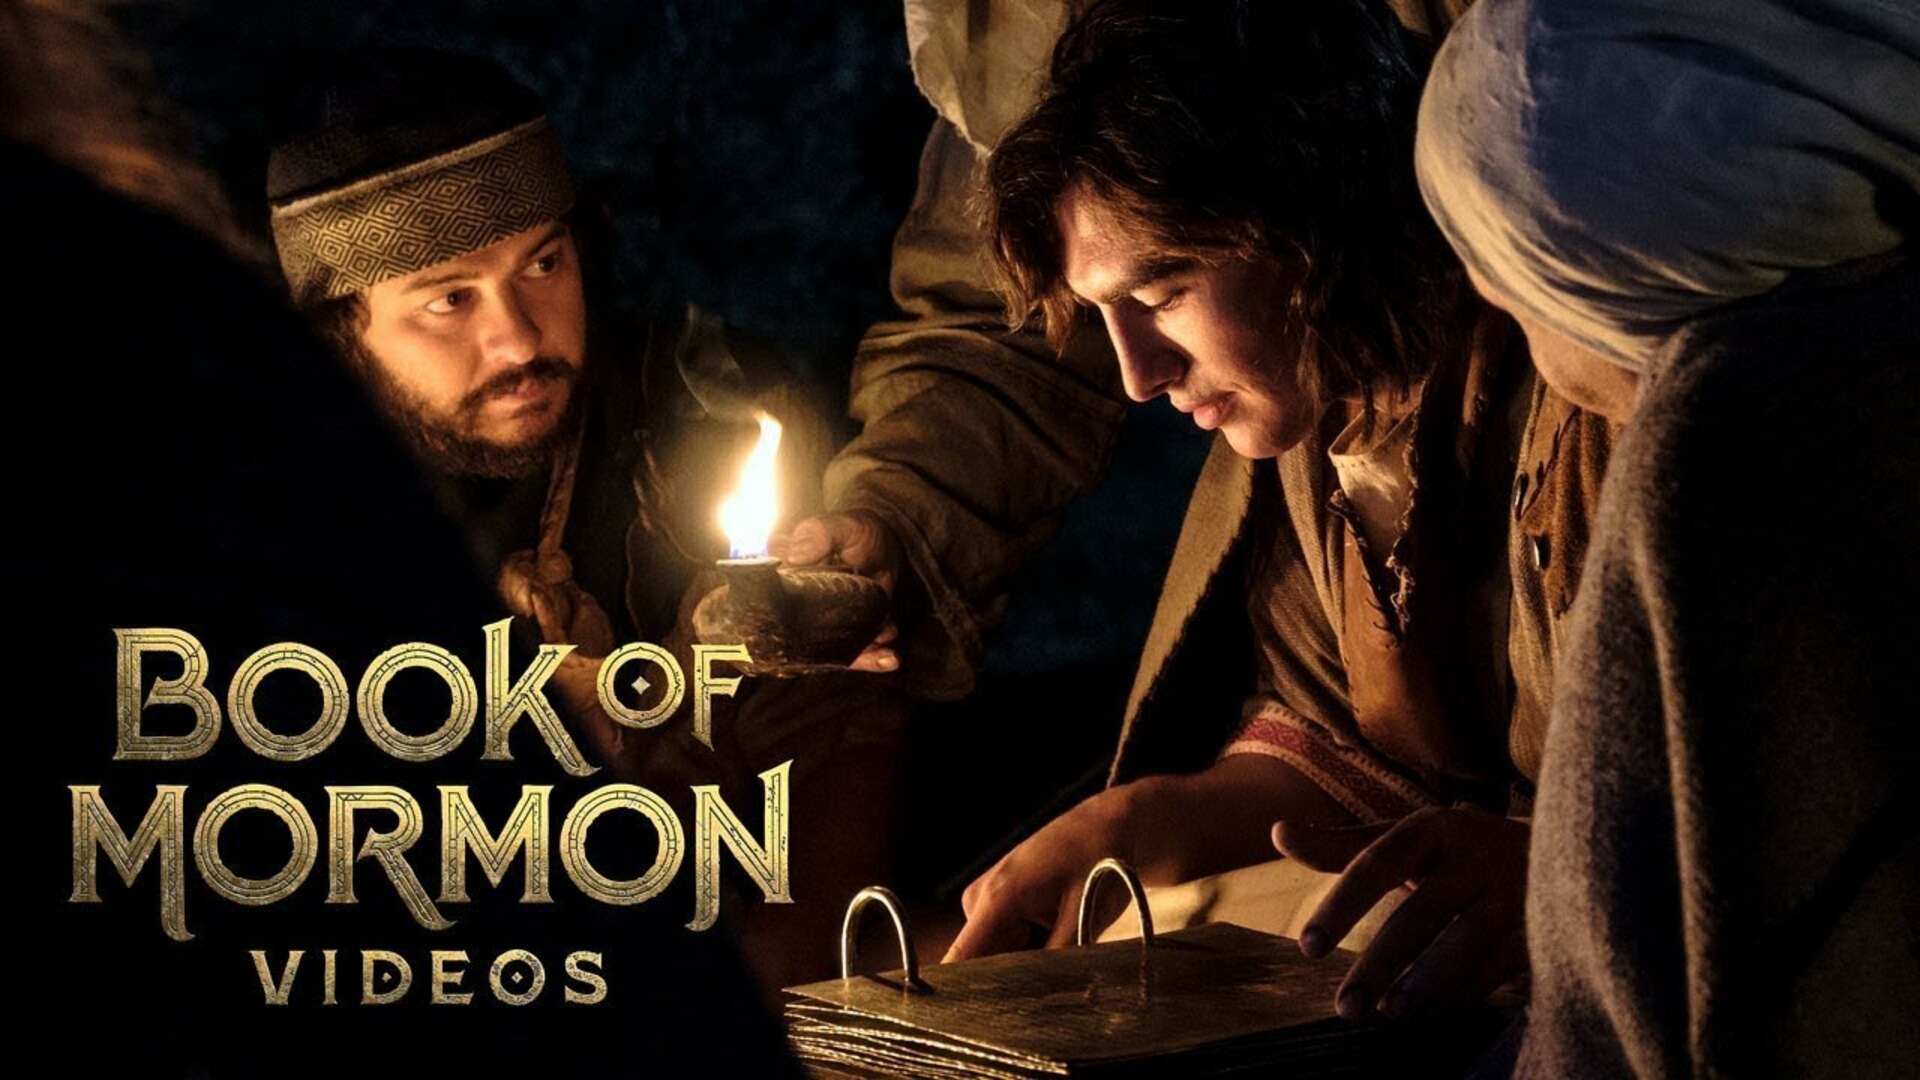 Book of Mormon Videos (TV Series 2019 Now)